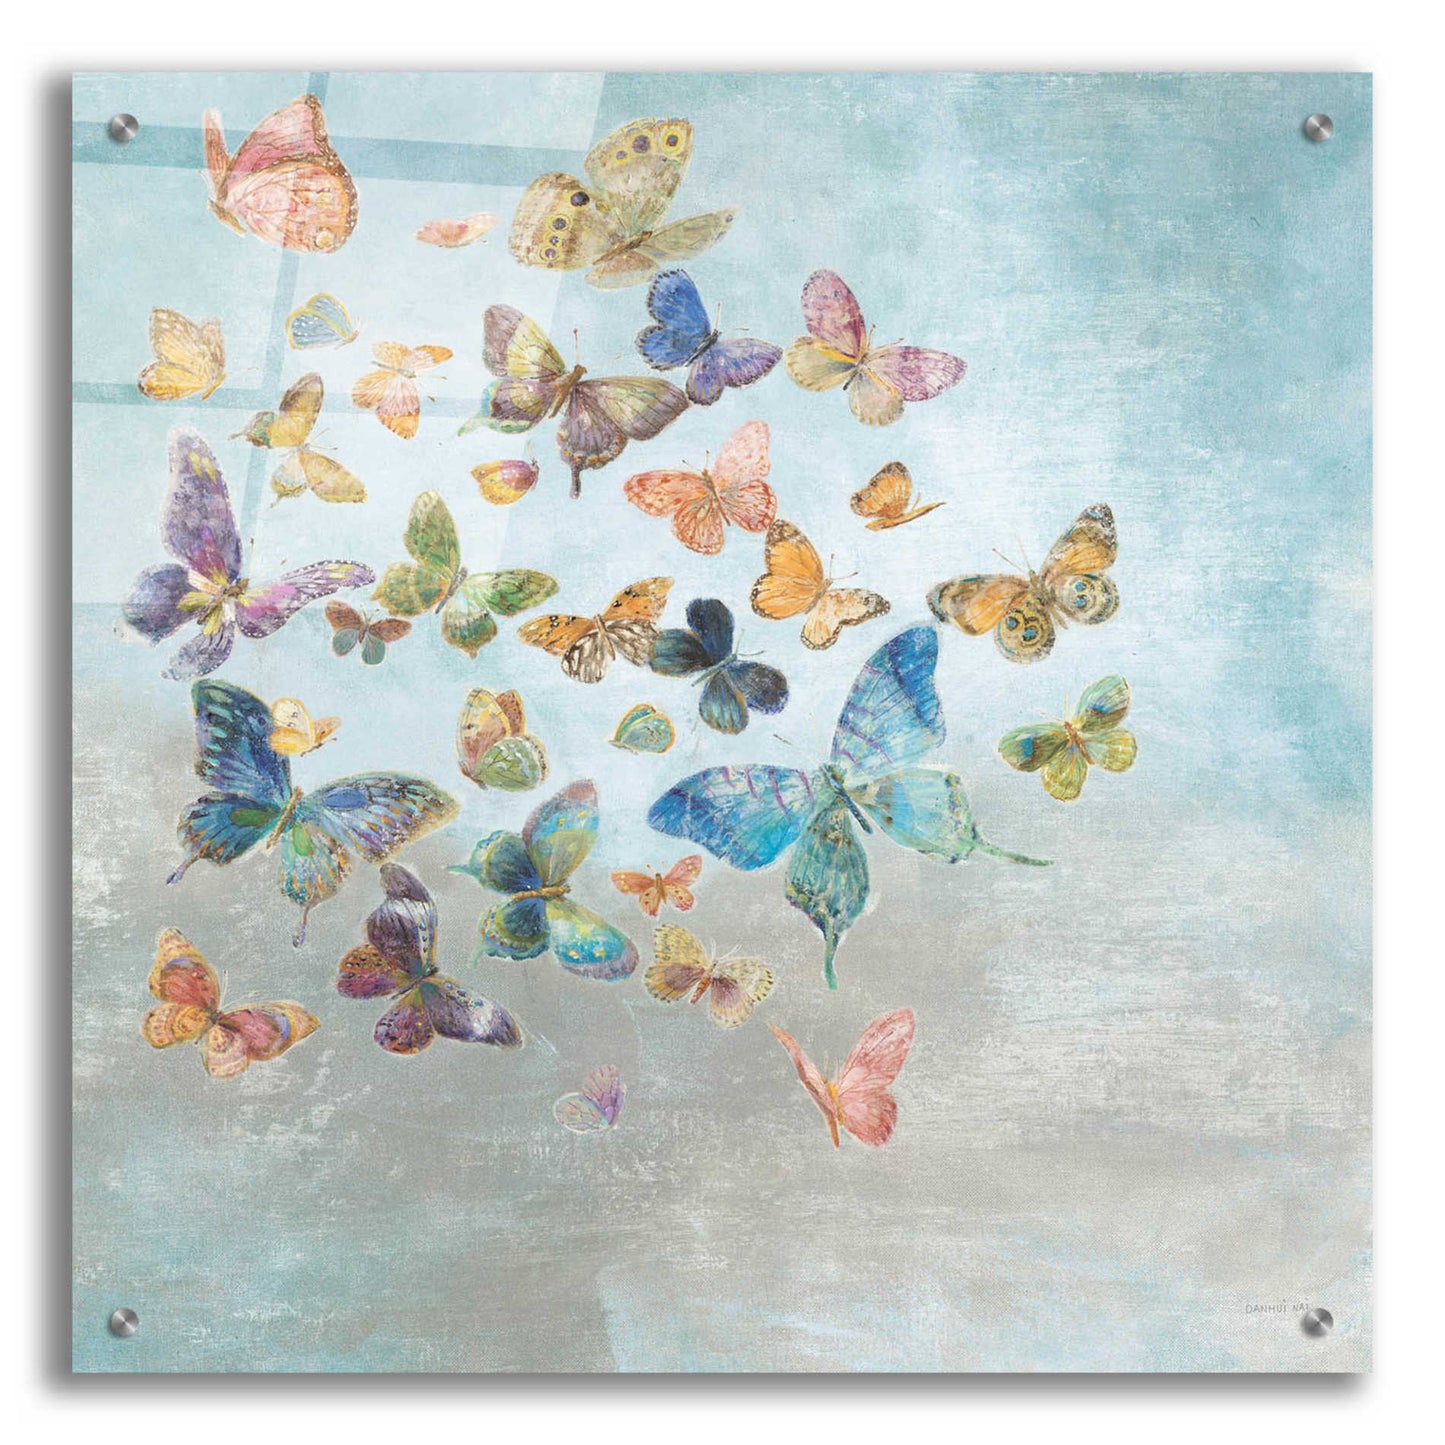 Epic Art 'Beautiful Butterflies v3 Square' by Danhui Nai, Acrylic Glass Wall Art,24x24